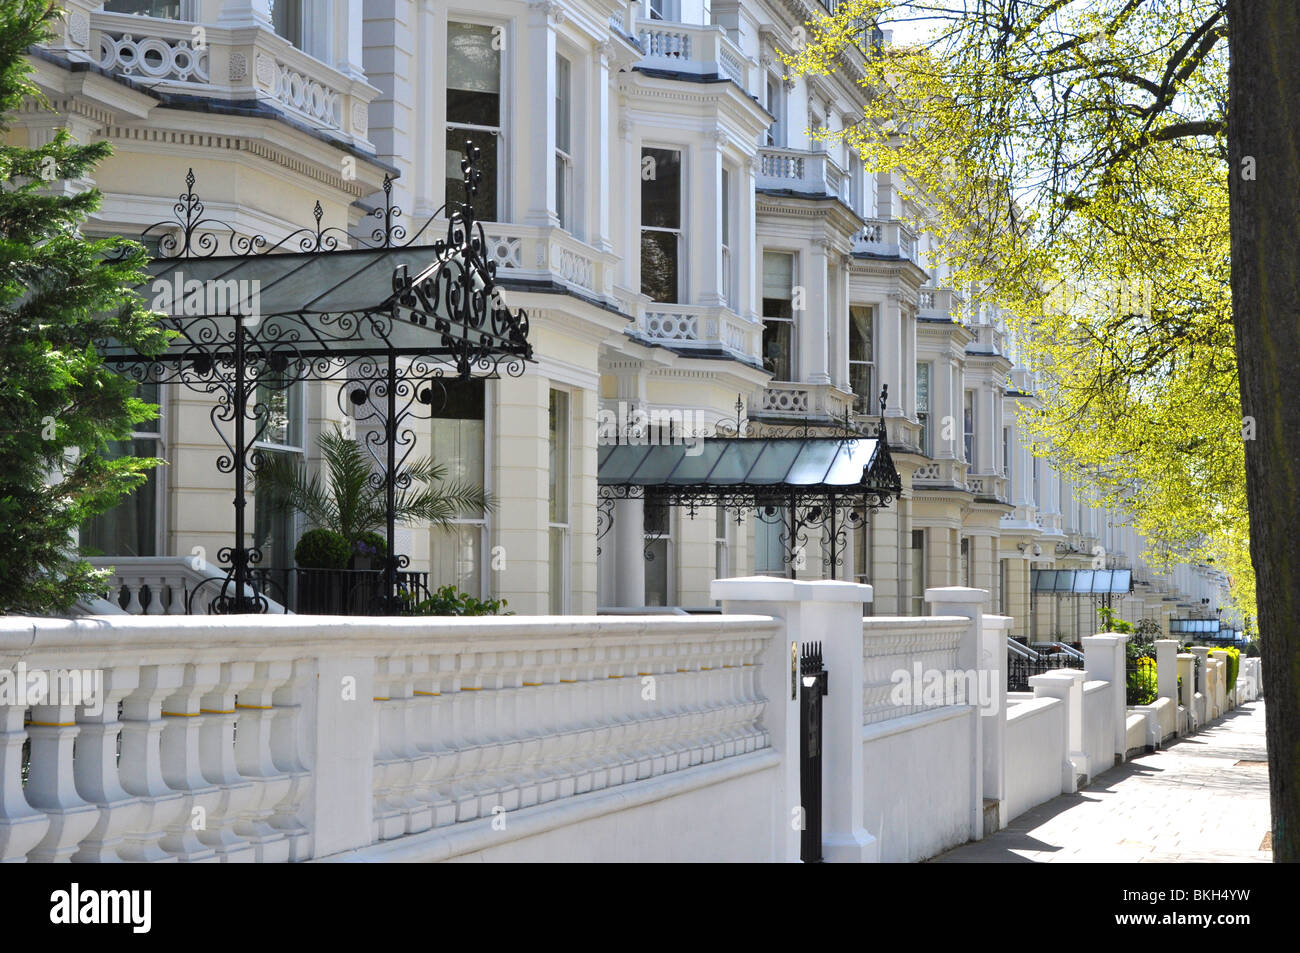 Holland Park-une rue de maisons de luxe dans la région de West London UK Banque D'Images